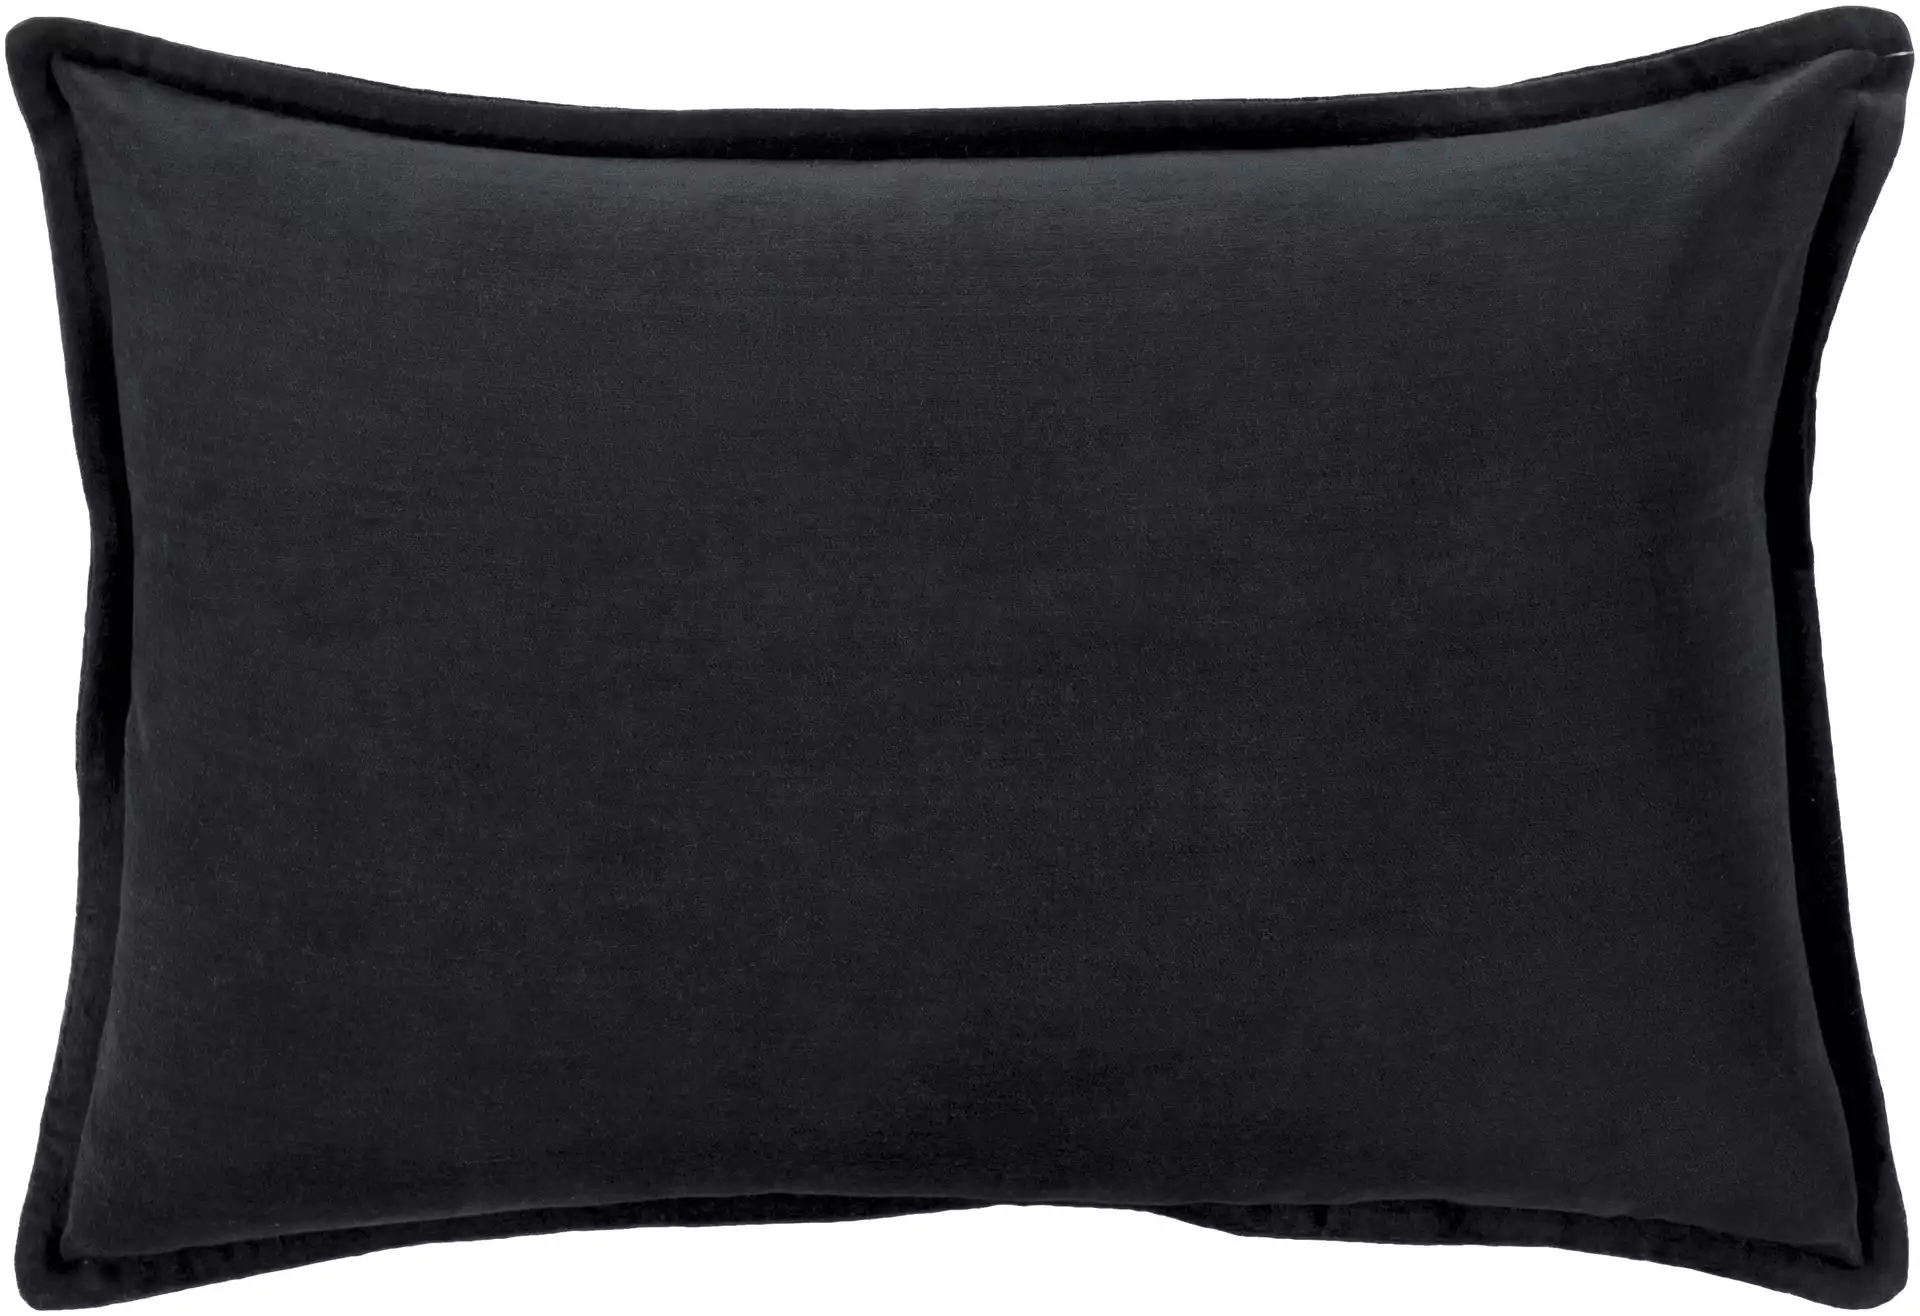 Cotton Velvet - CV-012 - 13" x 19" - pillow cover only